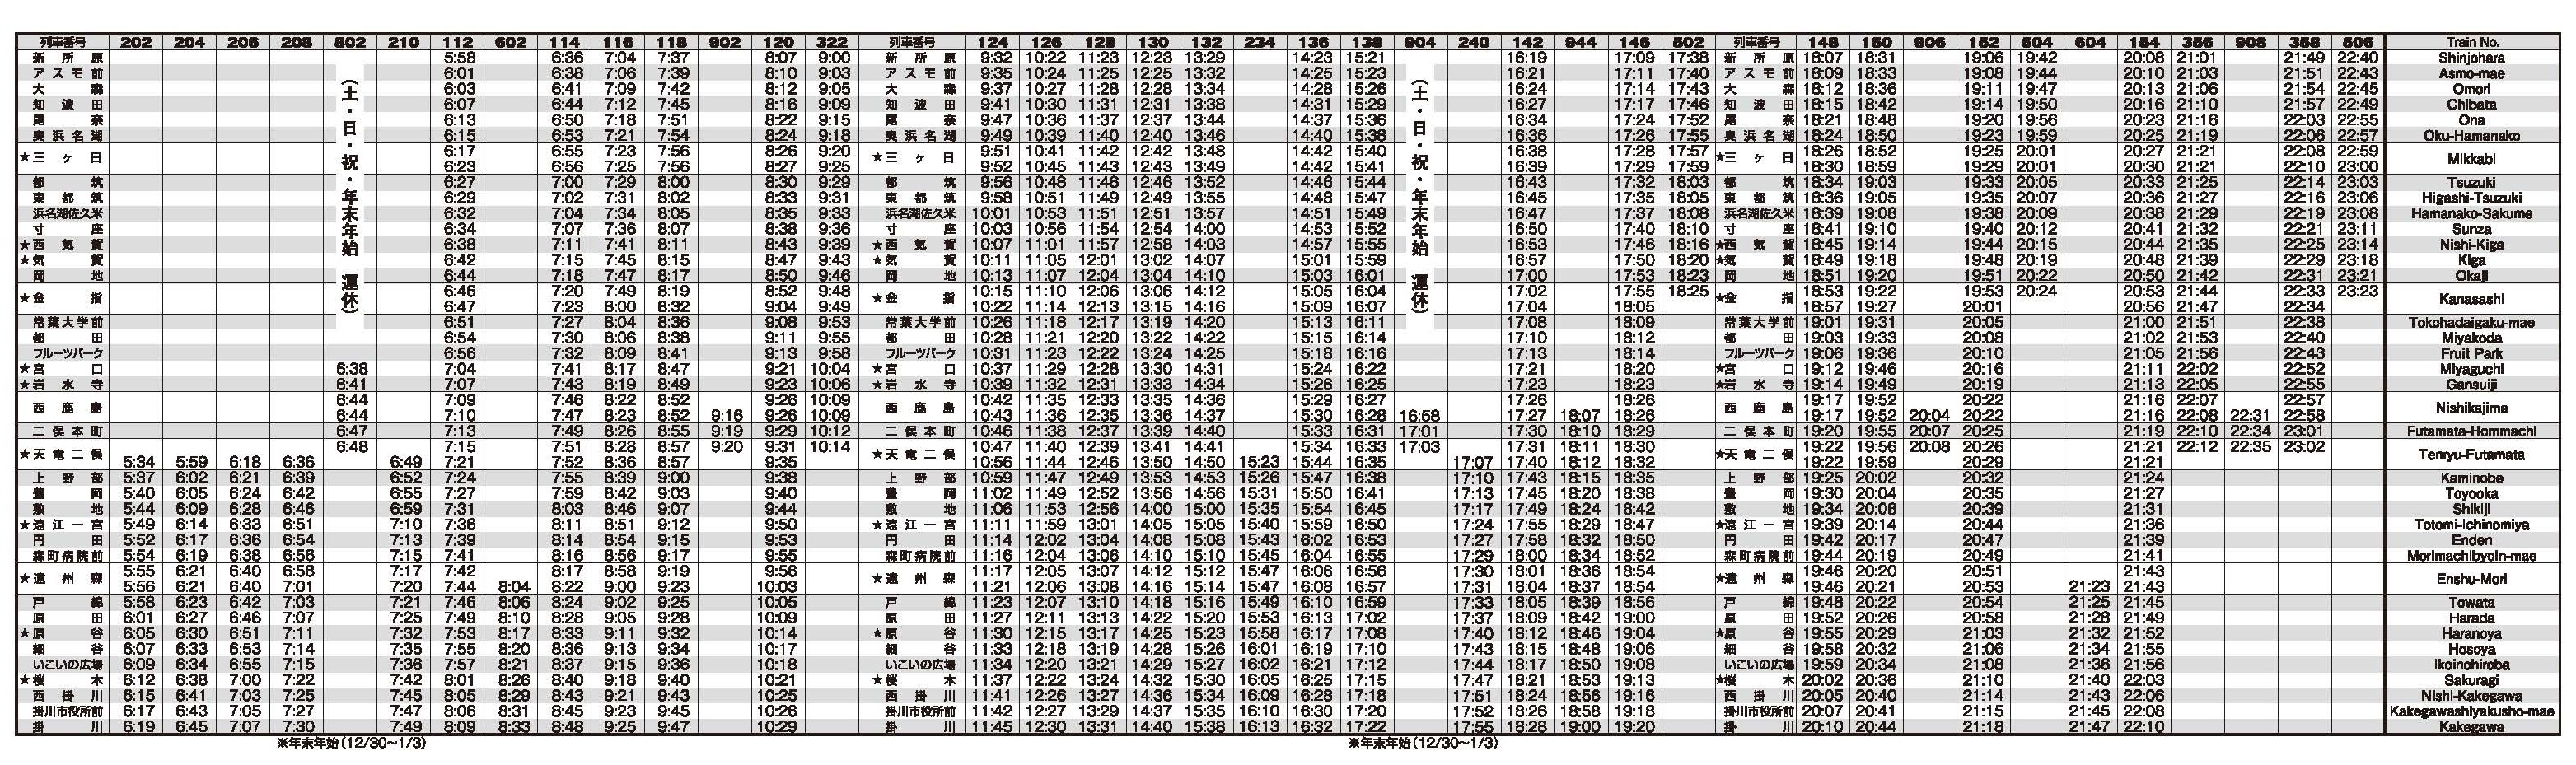 天浜線2022年3月12日改正時刻表_ページ_1